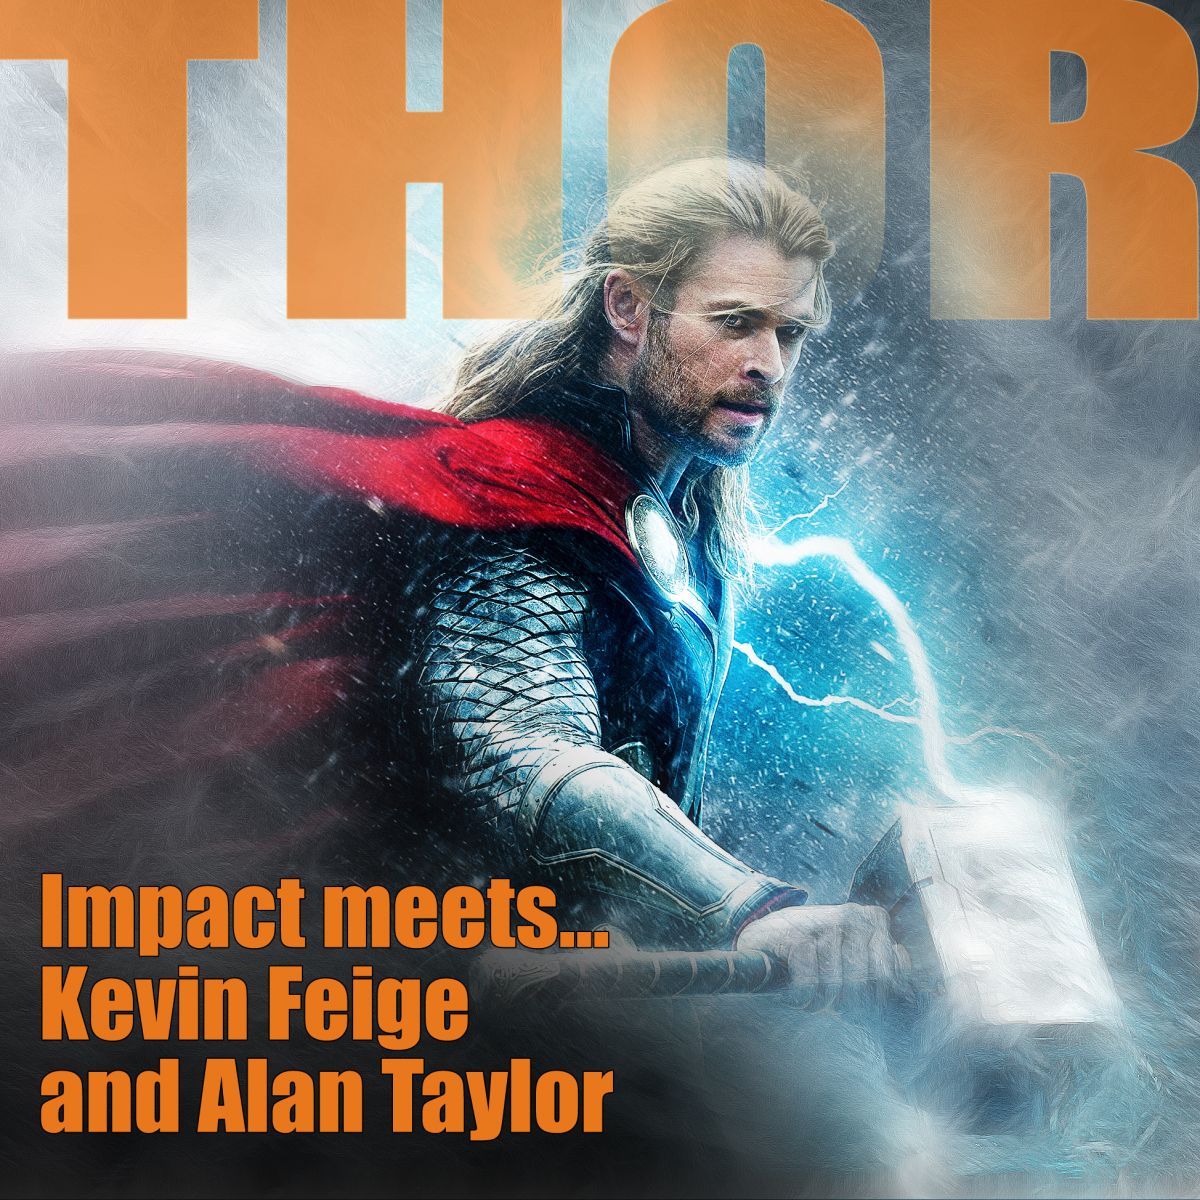 Thor: The Dark World Interviews